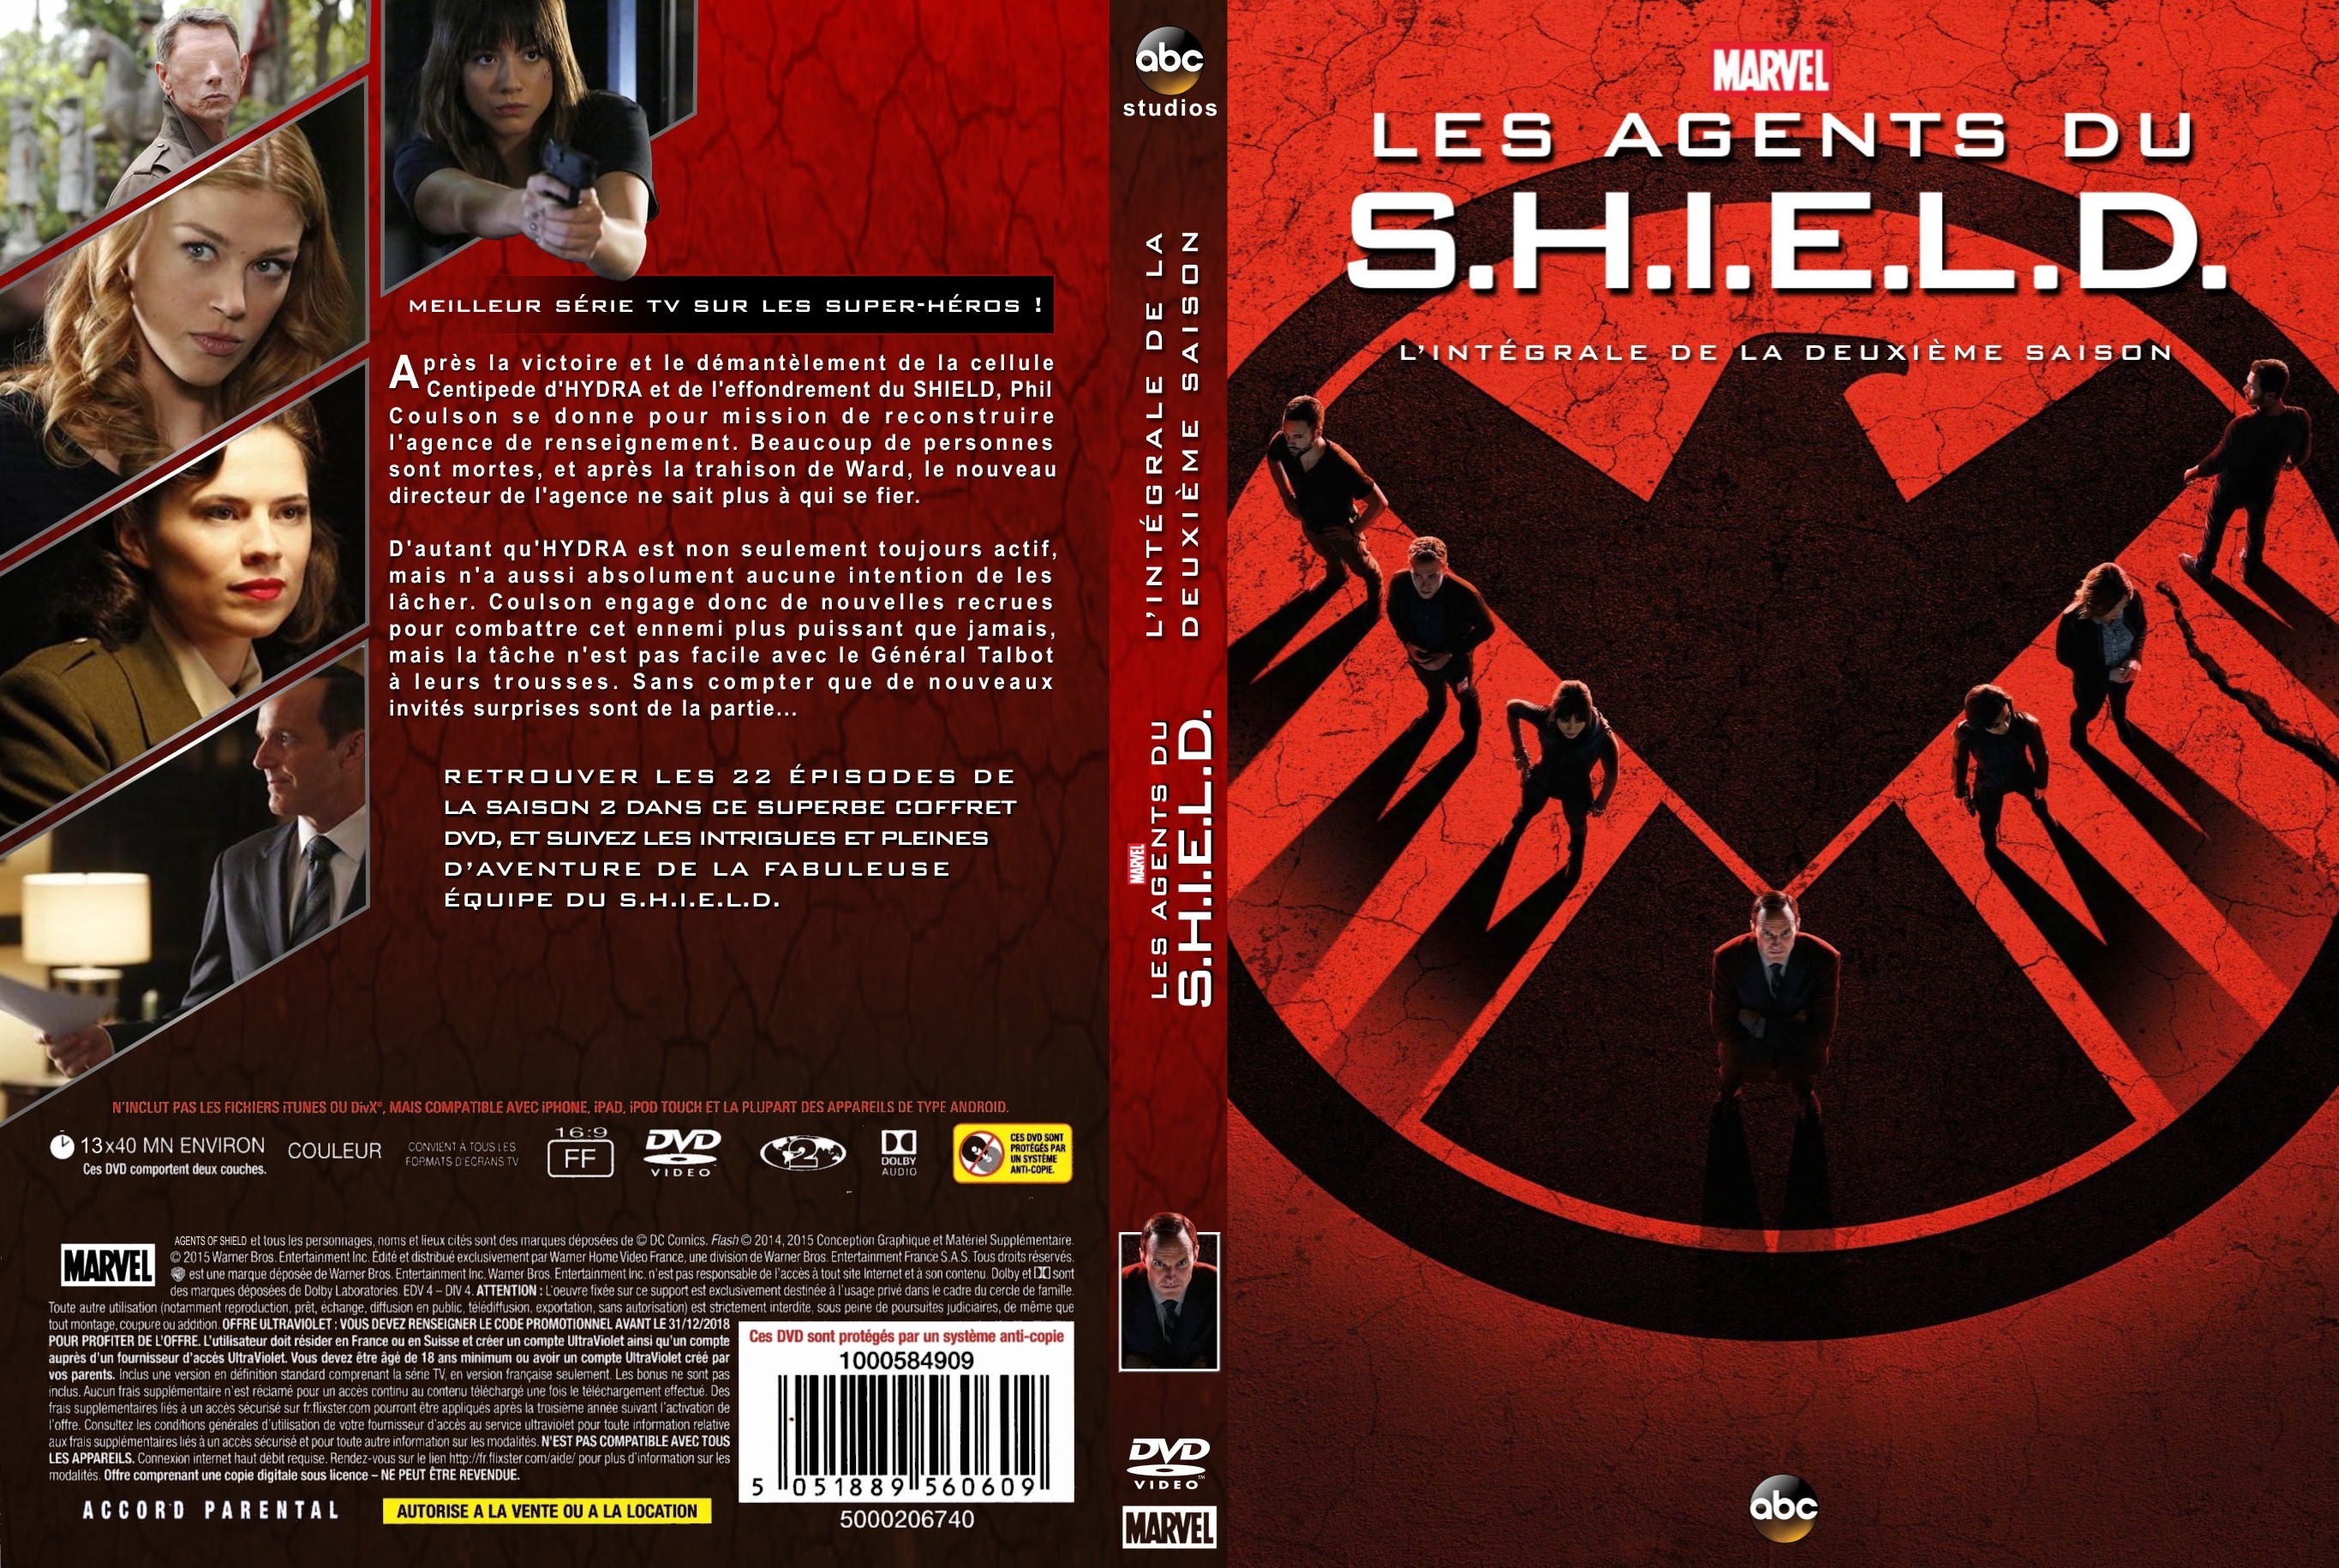 Jaquette DVD Les agents du SHIELD saison 2 custom v2